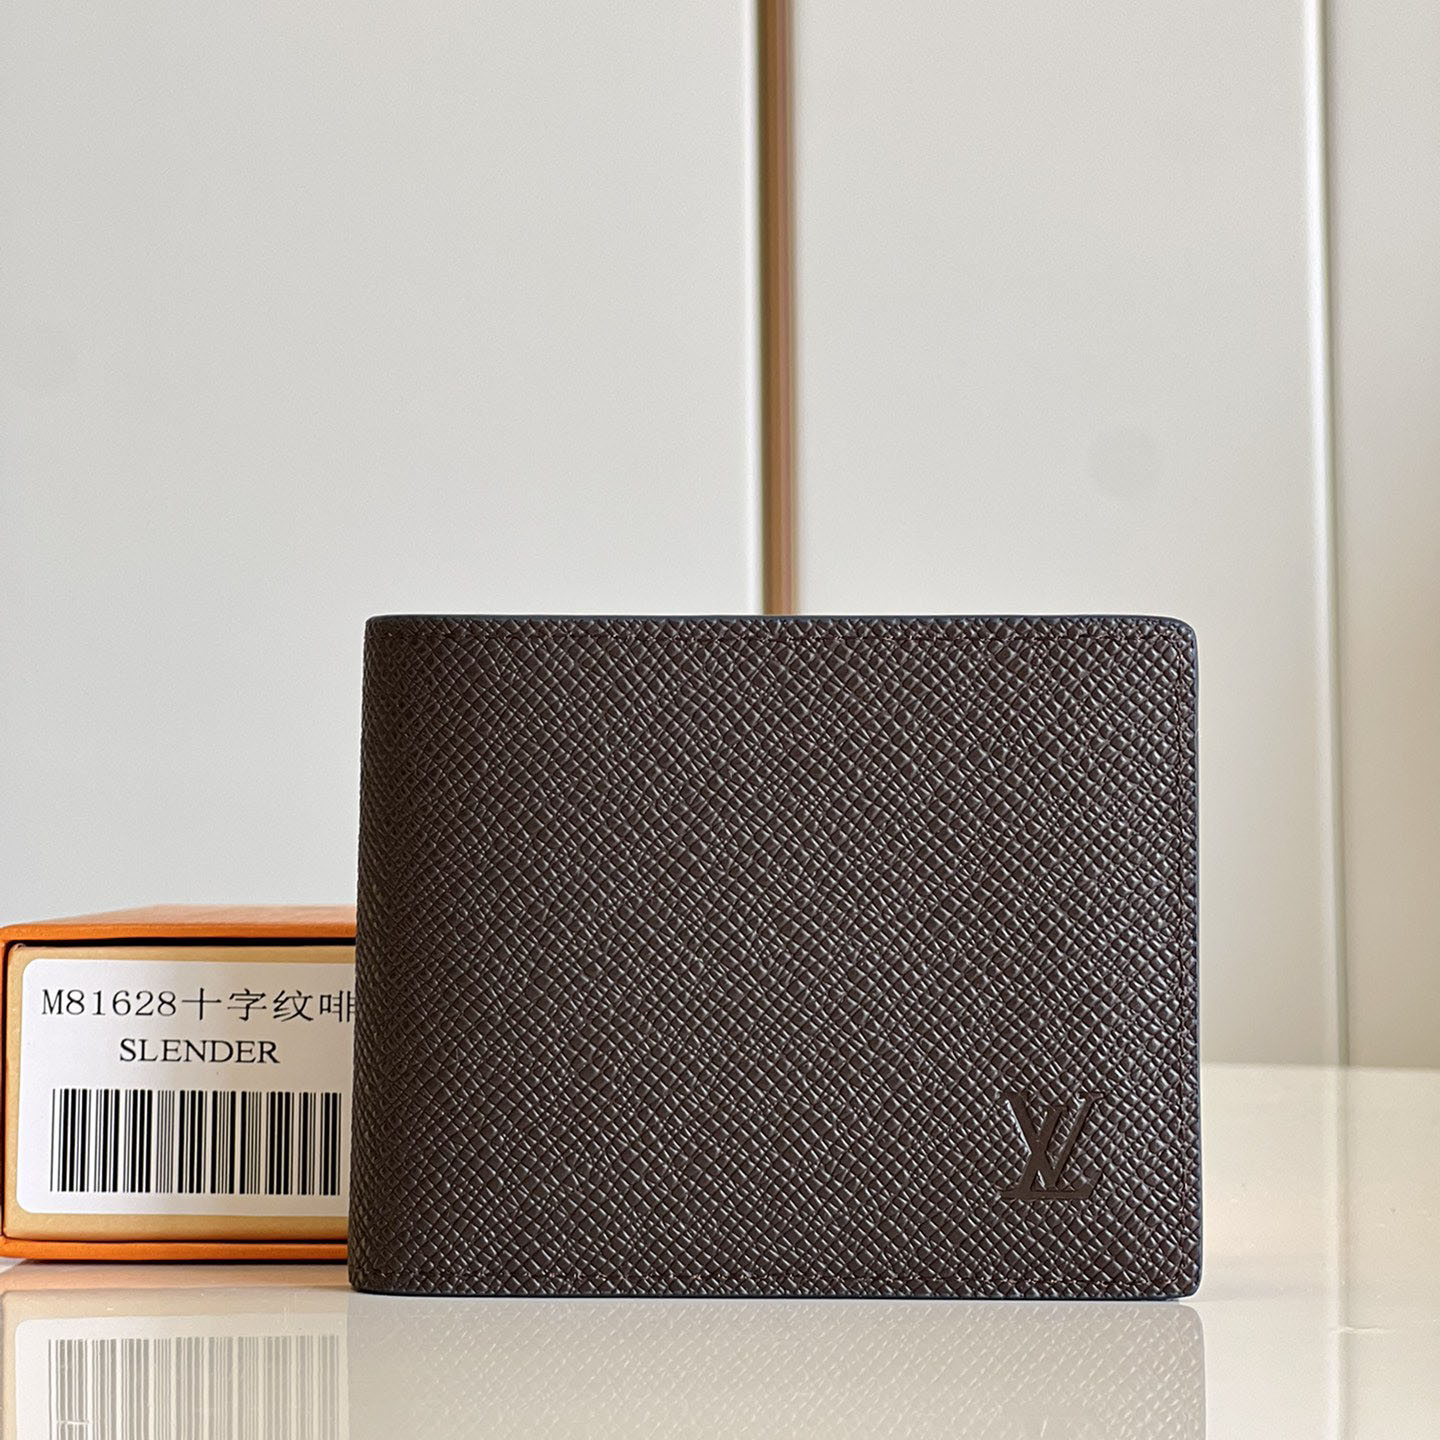 ルイヴィトン 財布 コピー M81628 ポルトフォイユ・スレンダー 